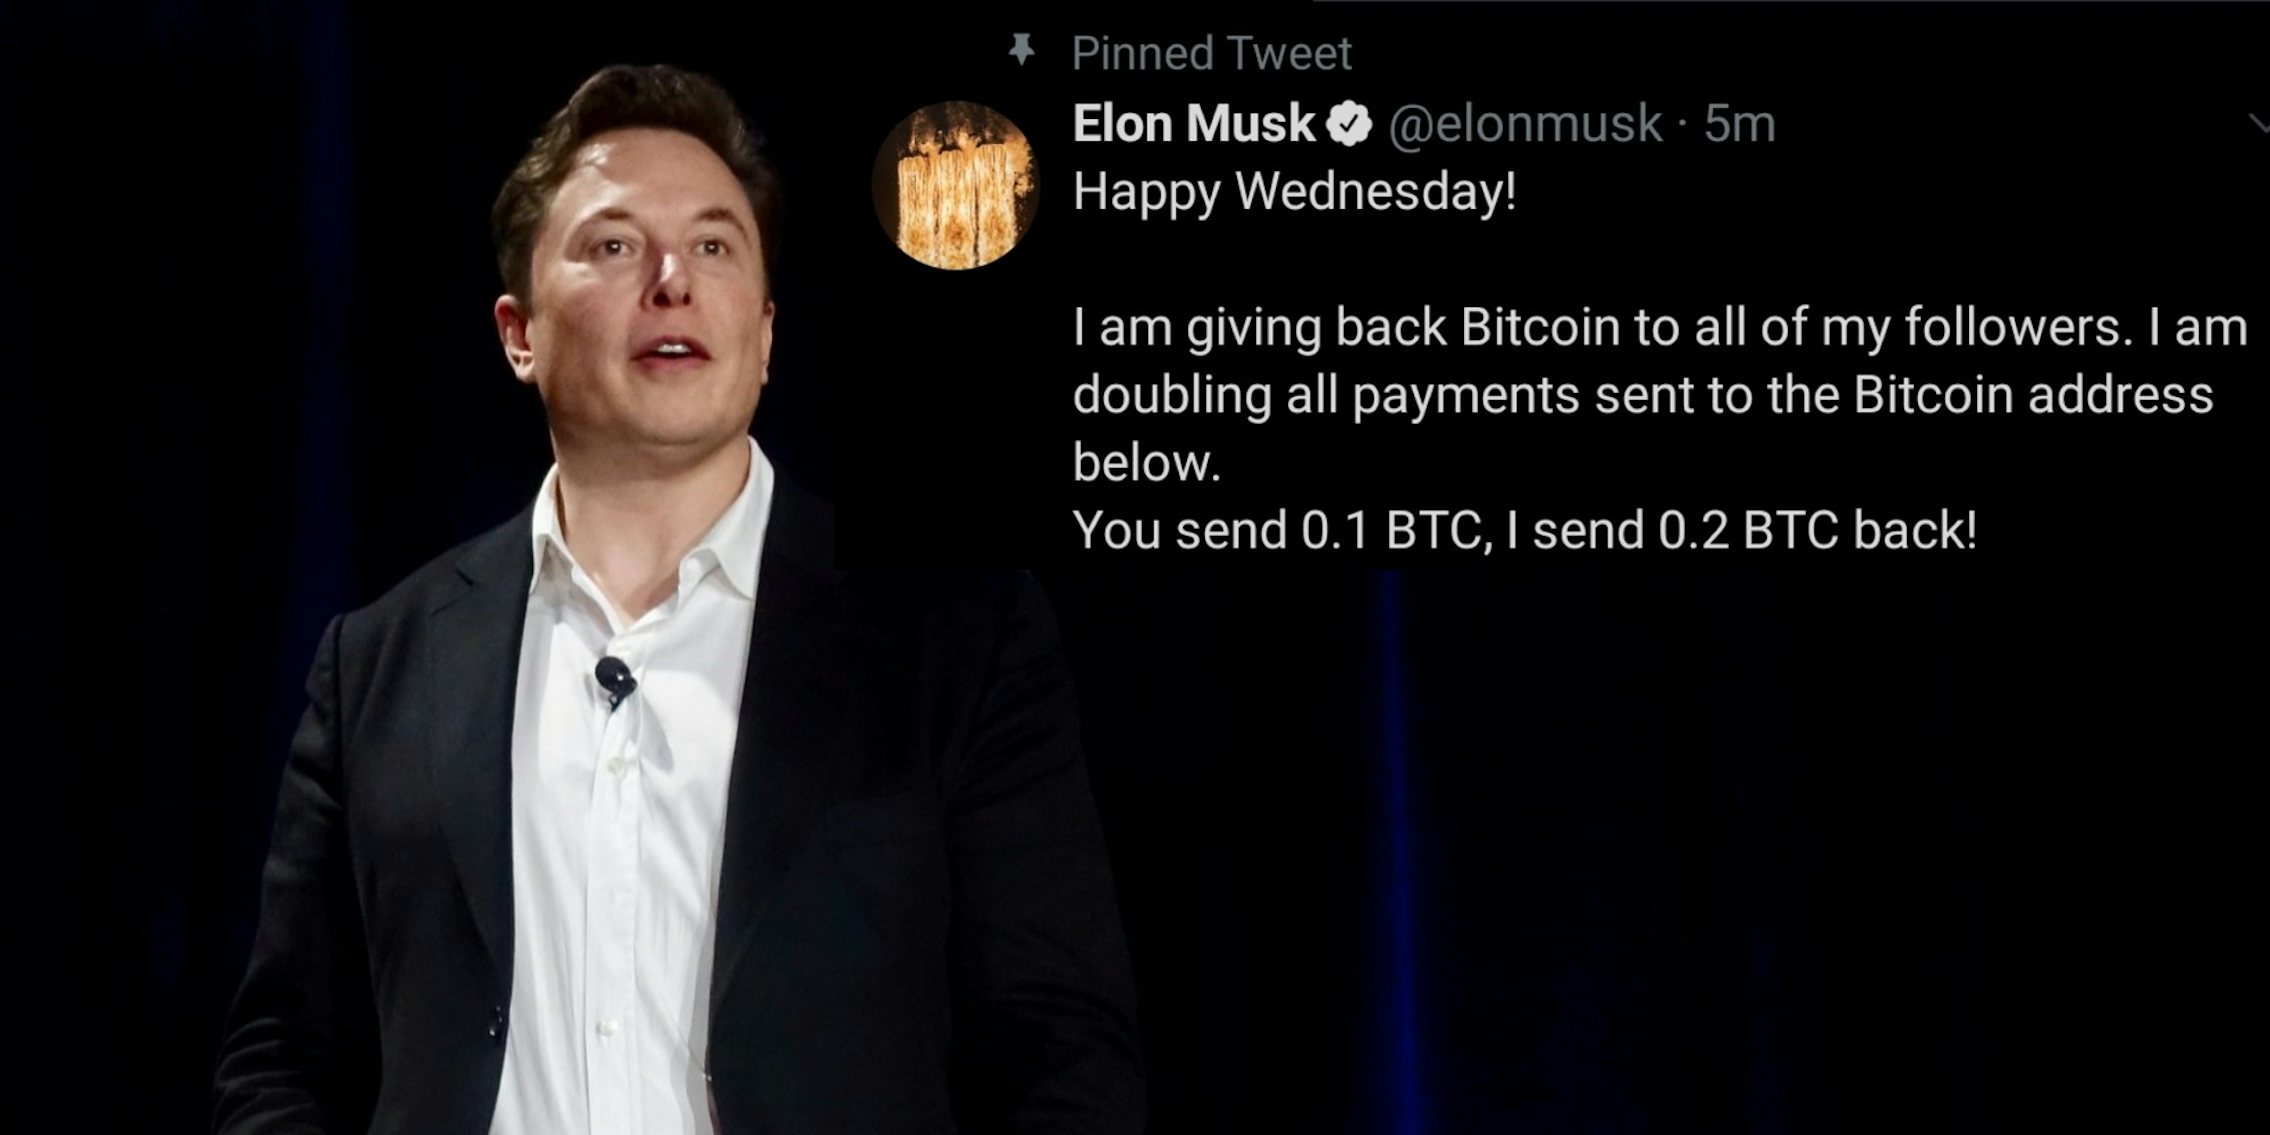 Elon Musk next to a scam tweet